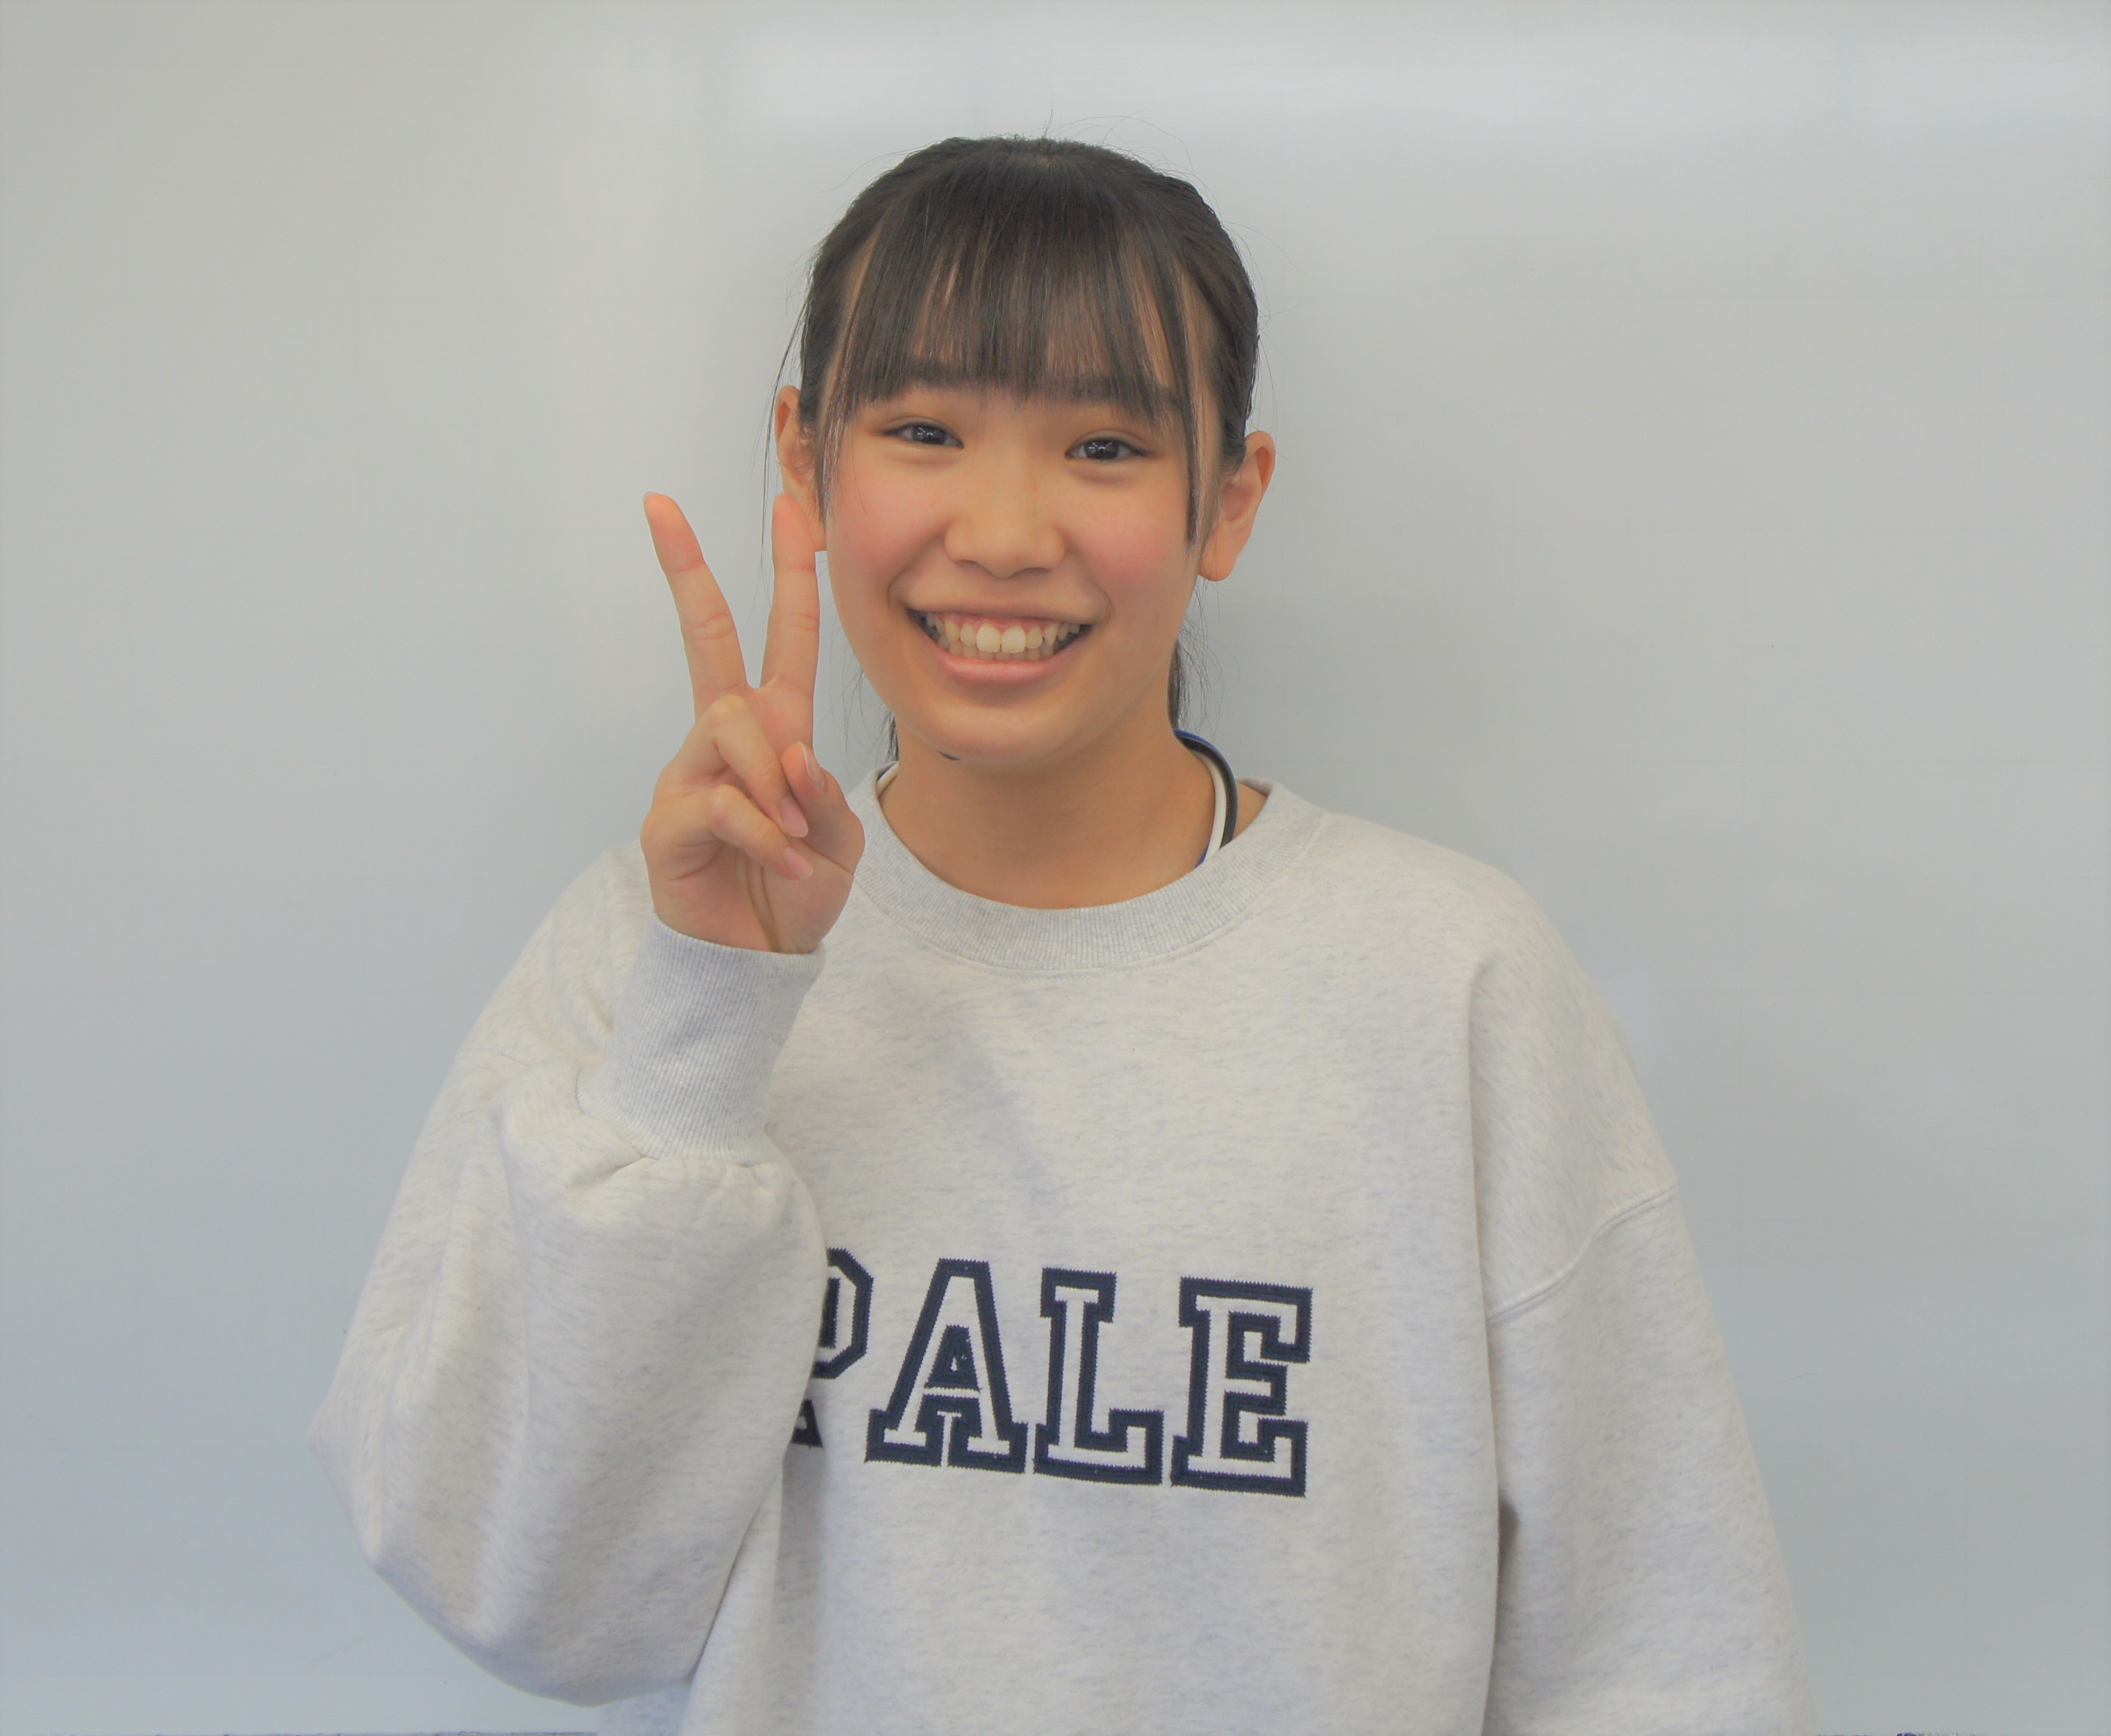 群馬県立太田女子高校合格者。小学生で始めたことで、英語が大得意に！